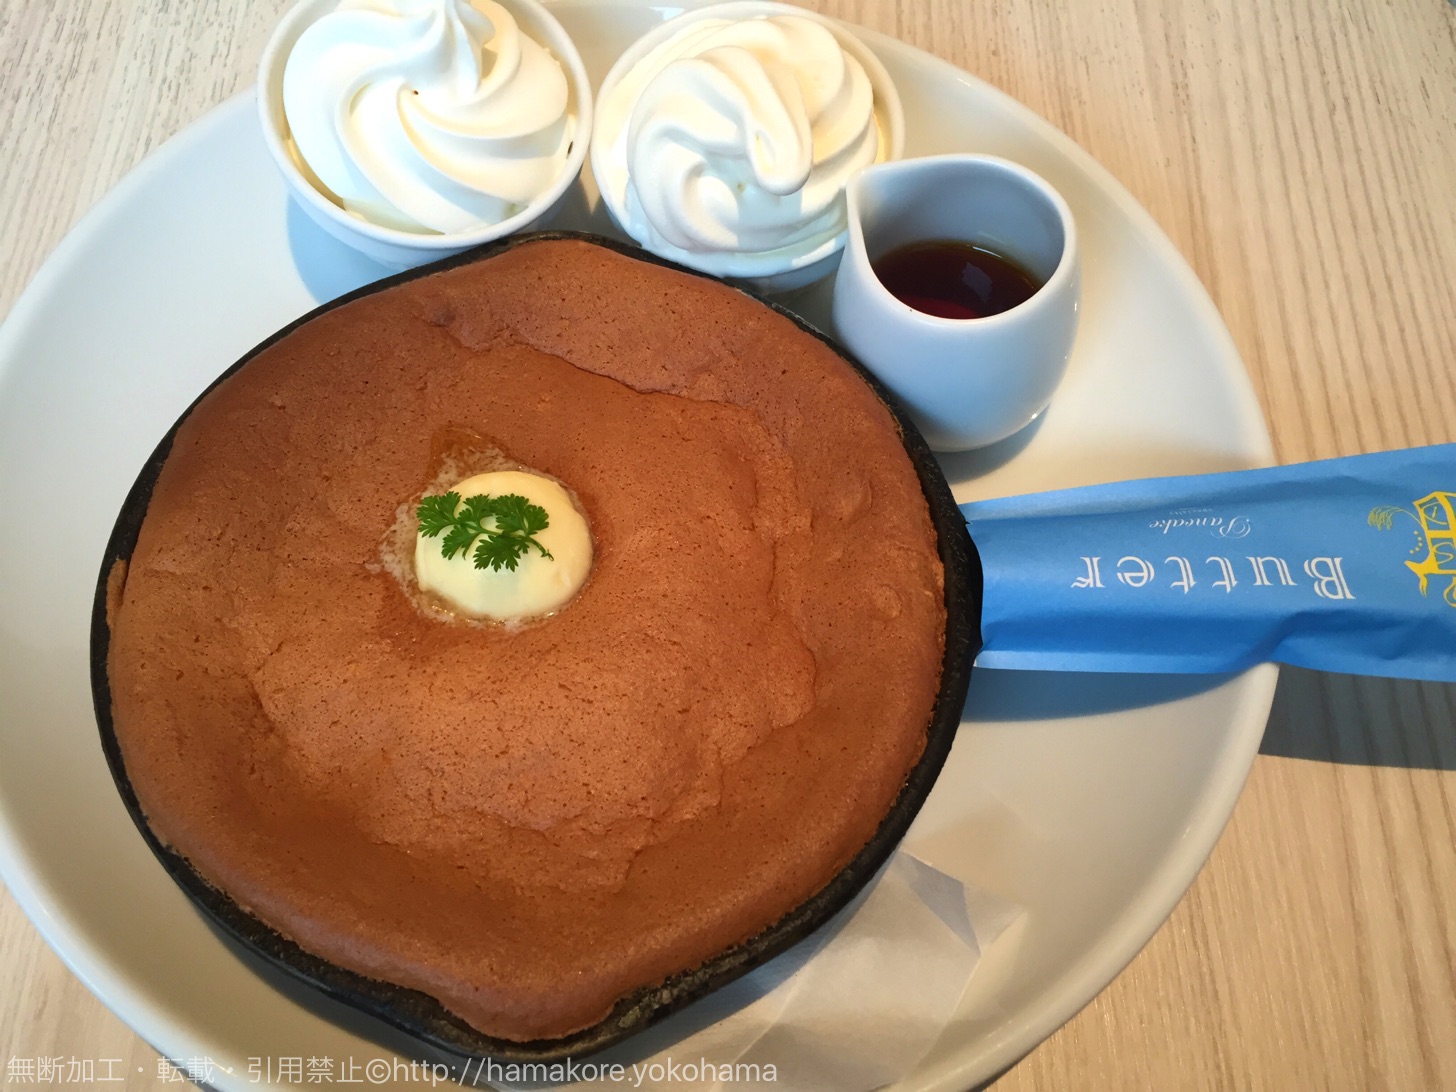 高級発酵バター使用 横浜ベイクォーター バター の窯出しスフレパンケーキは新食感 はまこれ横浜